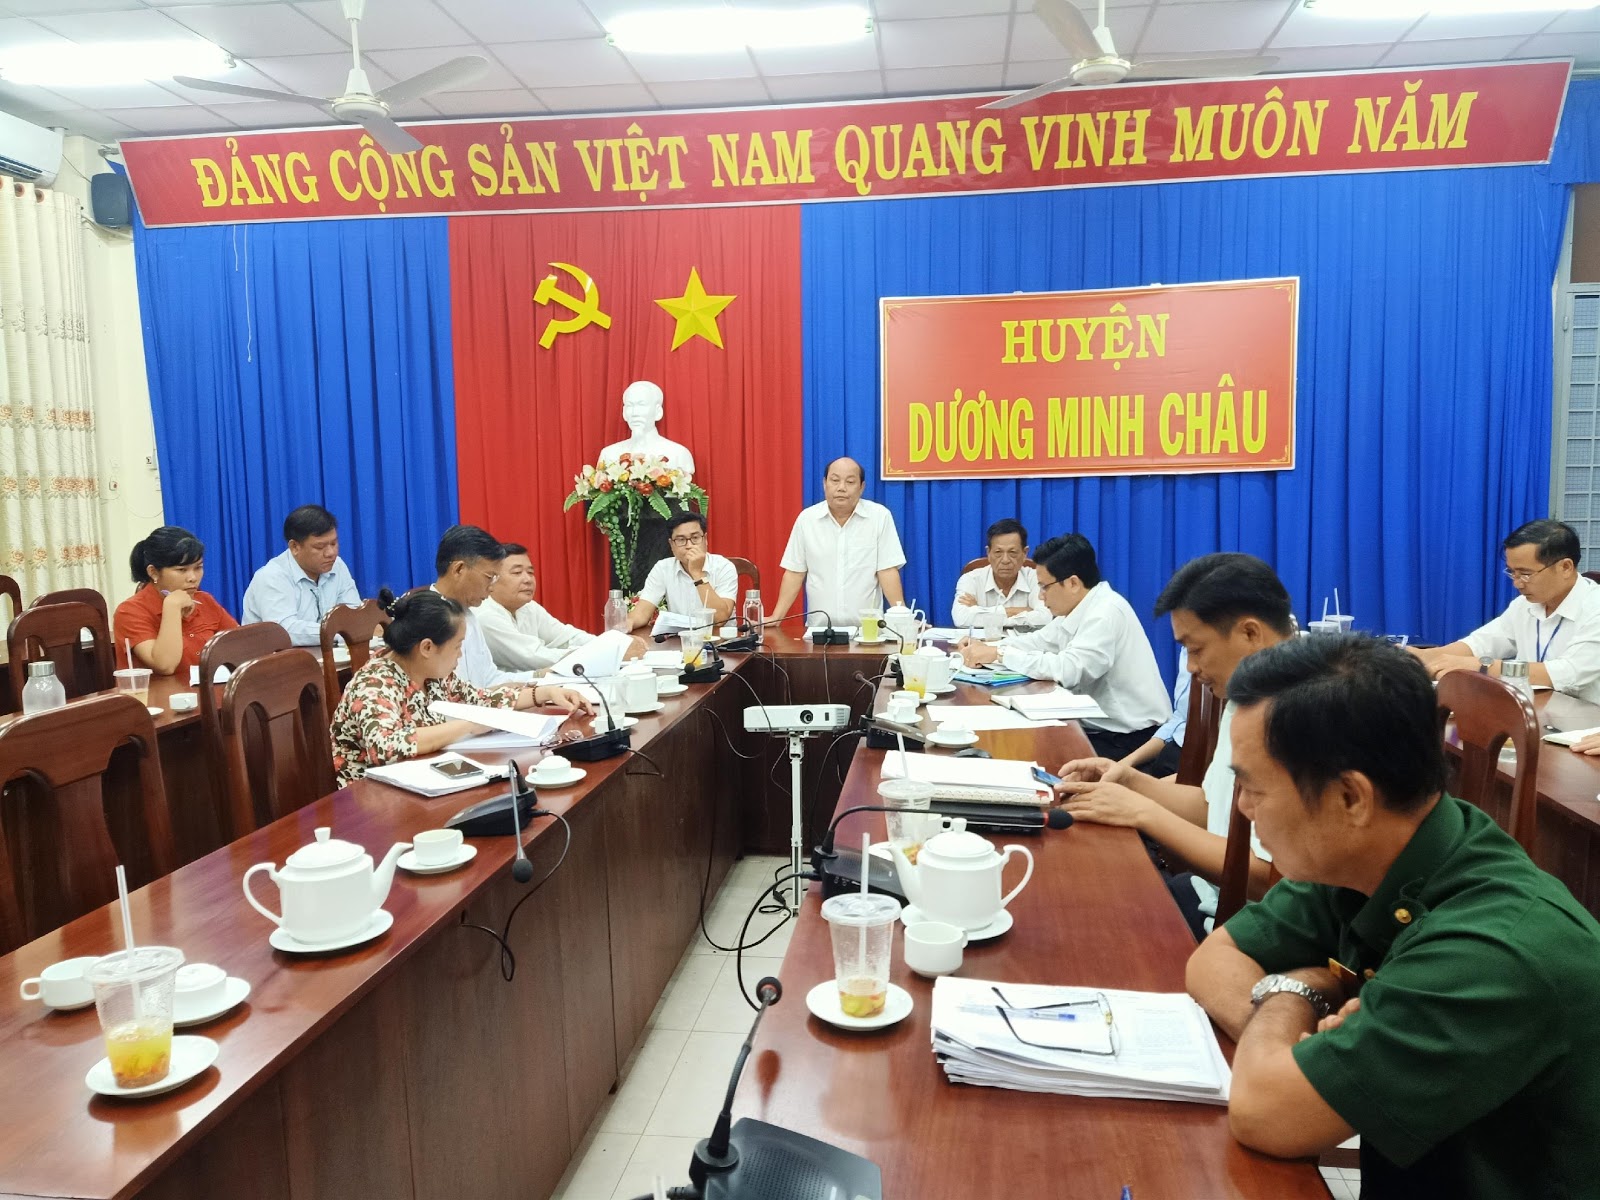   Kinh nghiệm và giải pháp để nâng cao chất lượng hoạt động giám sát  của Hội đồng nhân dân huyện Dương Minh Châu